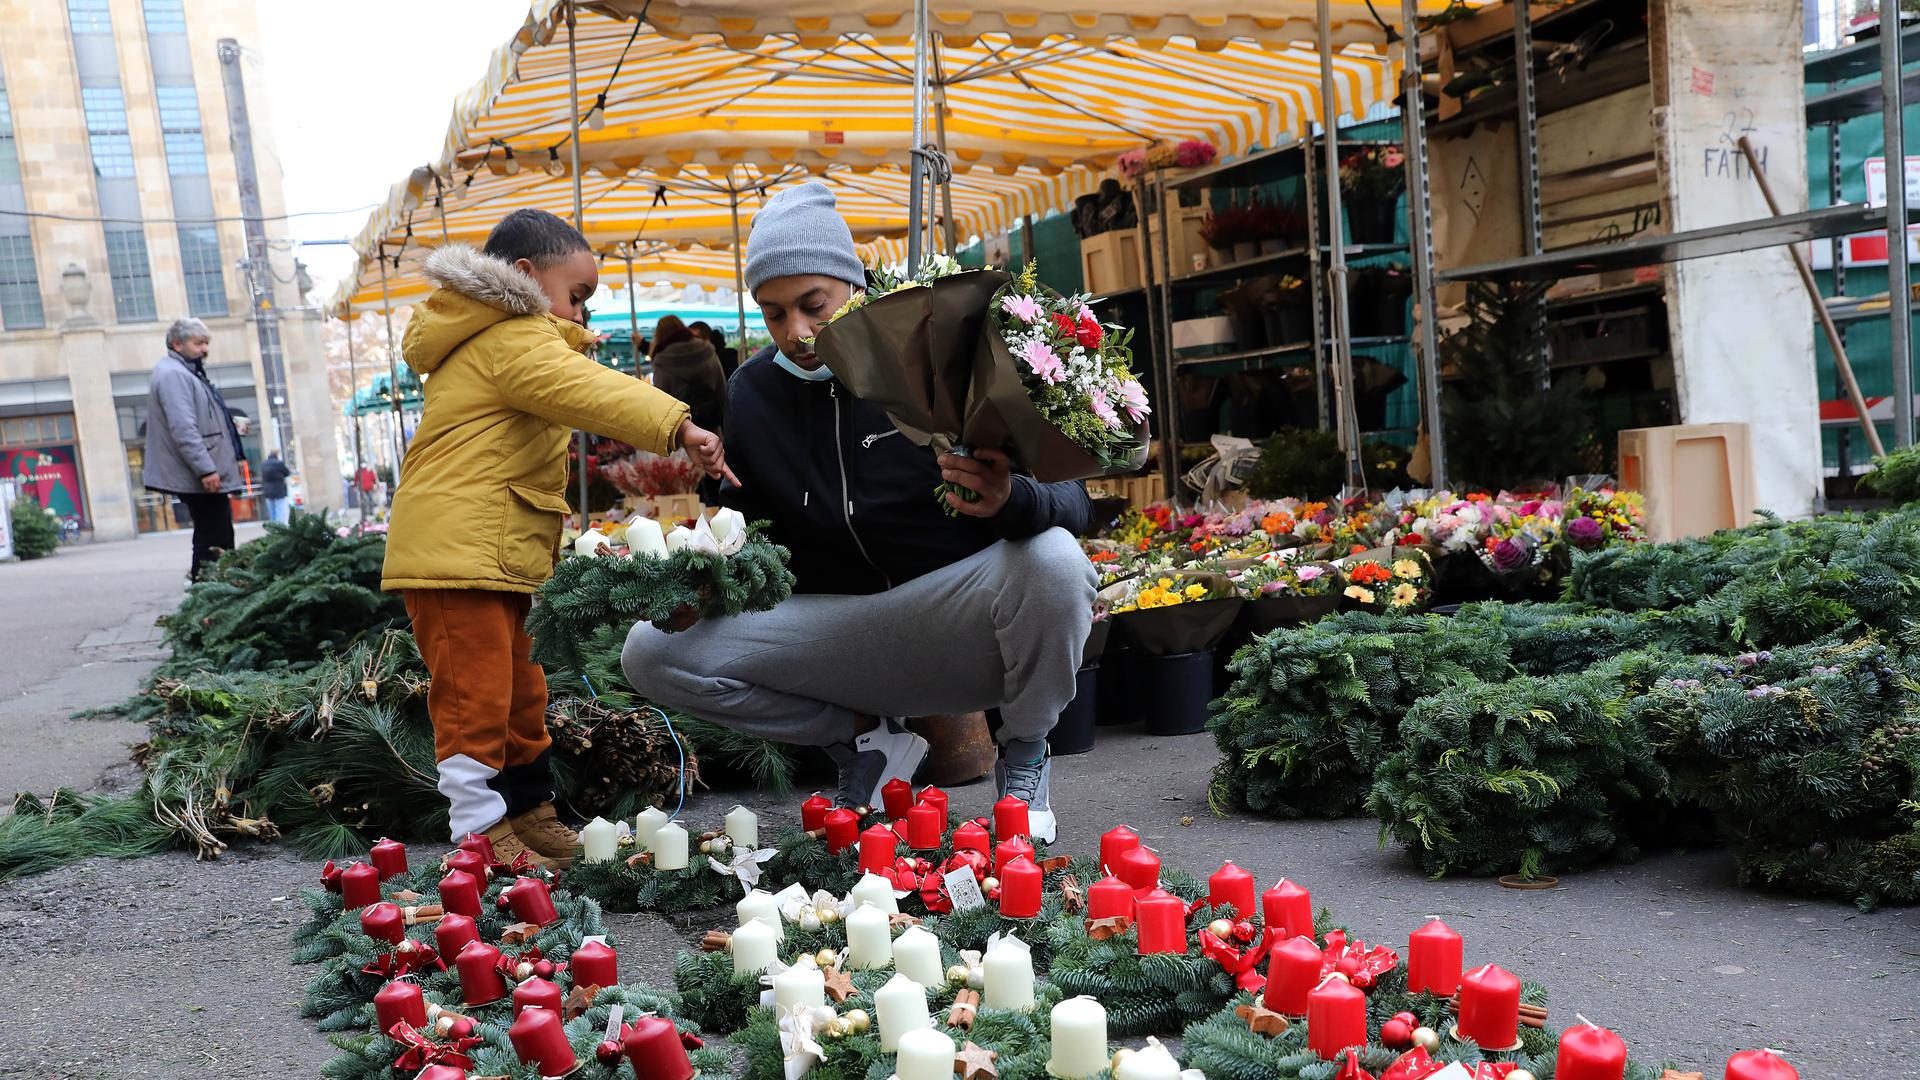 Der Sohn trifft die Wahl: Am Karlsruher Blumenmarkt haben Kunden die Auswahl zwischen fertigen Adventskränzen mit verschiedenfarbigen Kerzen und ungeschmücktem Grün zum Selber-Dekorieren.